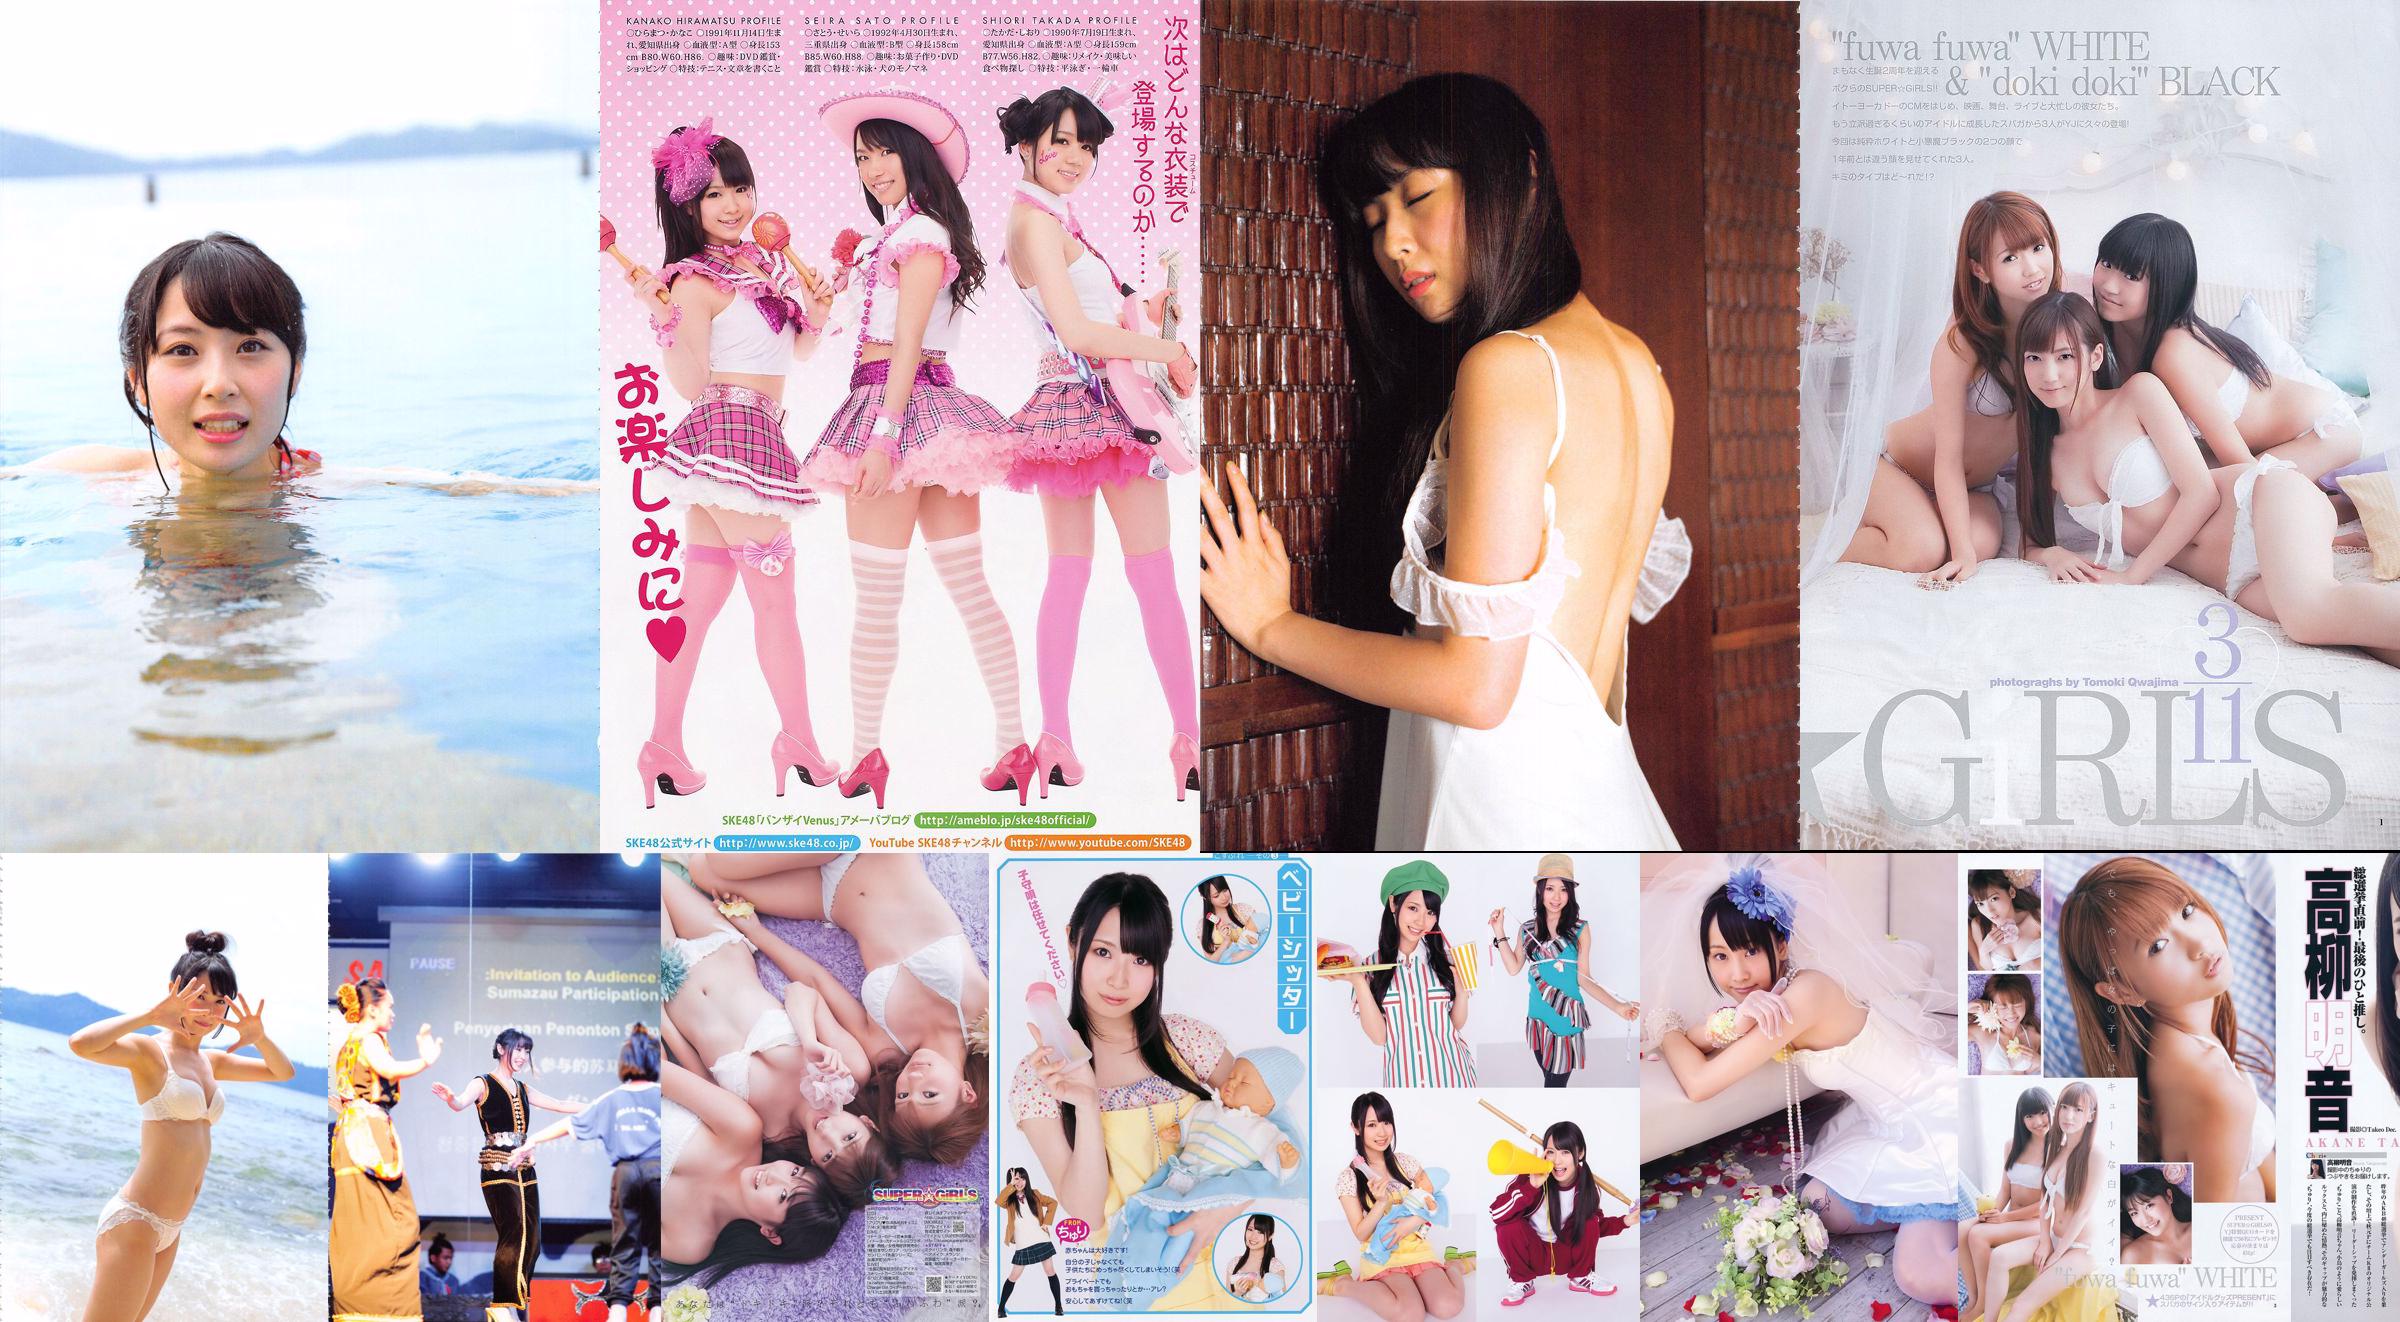 Akane Takayanagi SKE48 Fujii Sherry Asakura Sorrow Shinsaki Shiori [Young Animal] Tạp chí ảnh số 11 năm 2011 No.3005b8 Trang 1